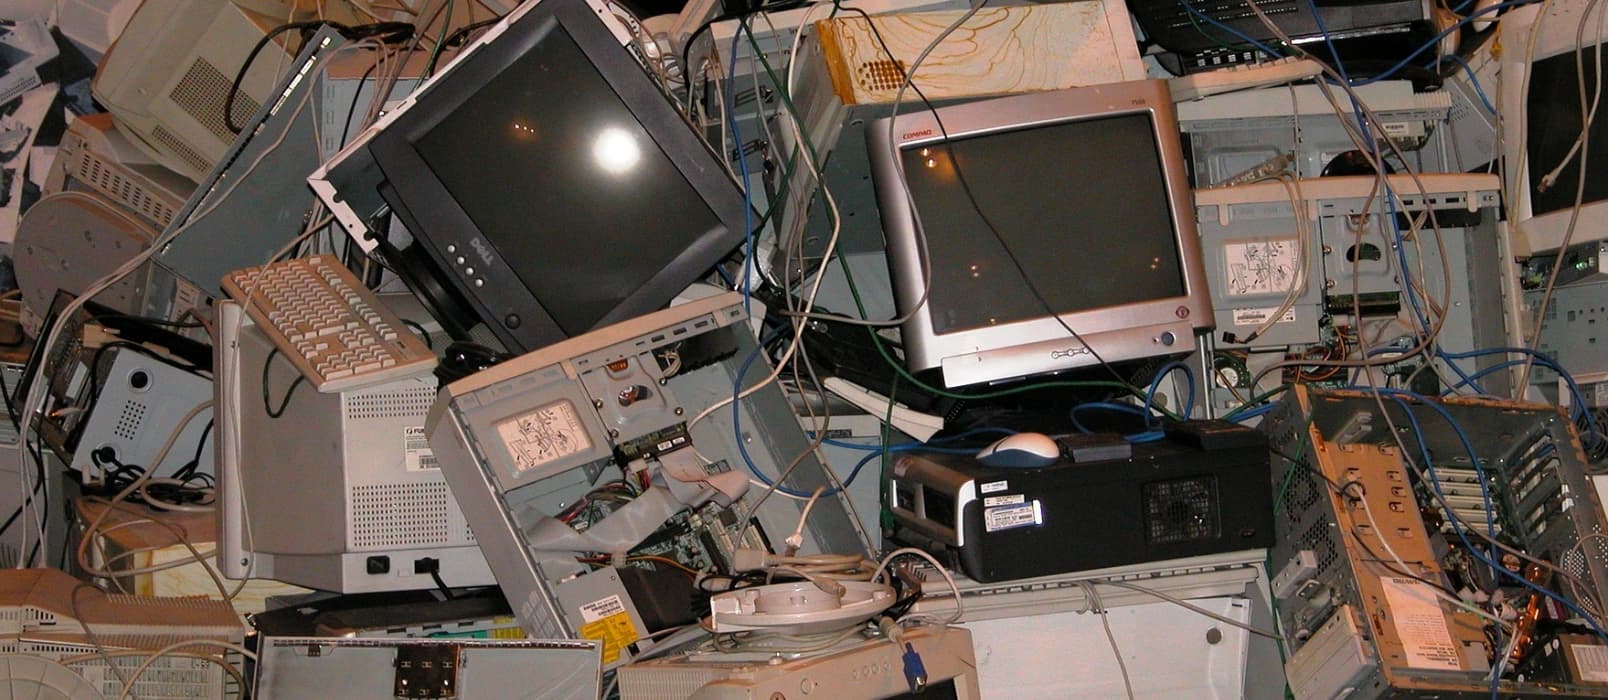 如何识别老电脑硬件型号，下载干净、准确的驱动，并安装 Windows 7 1